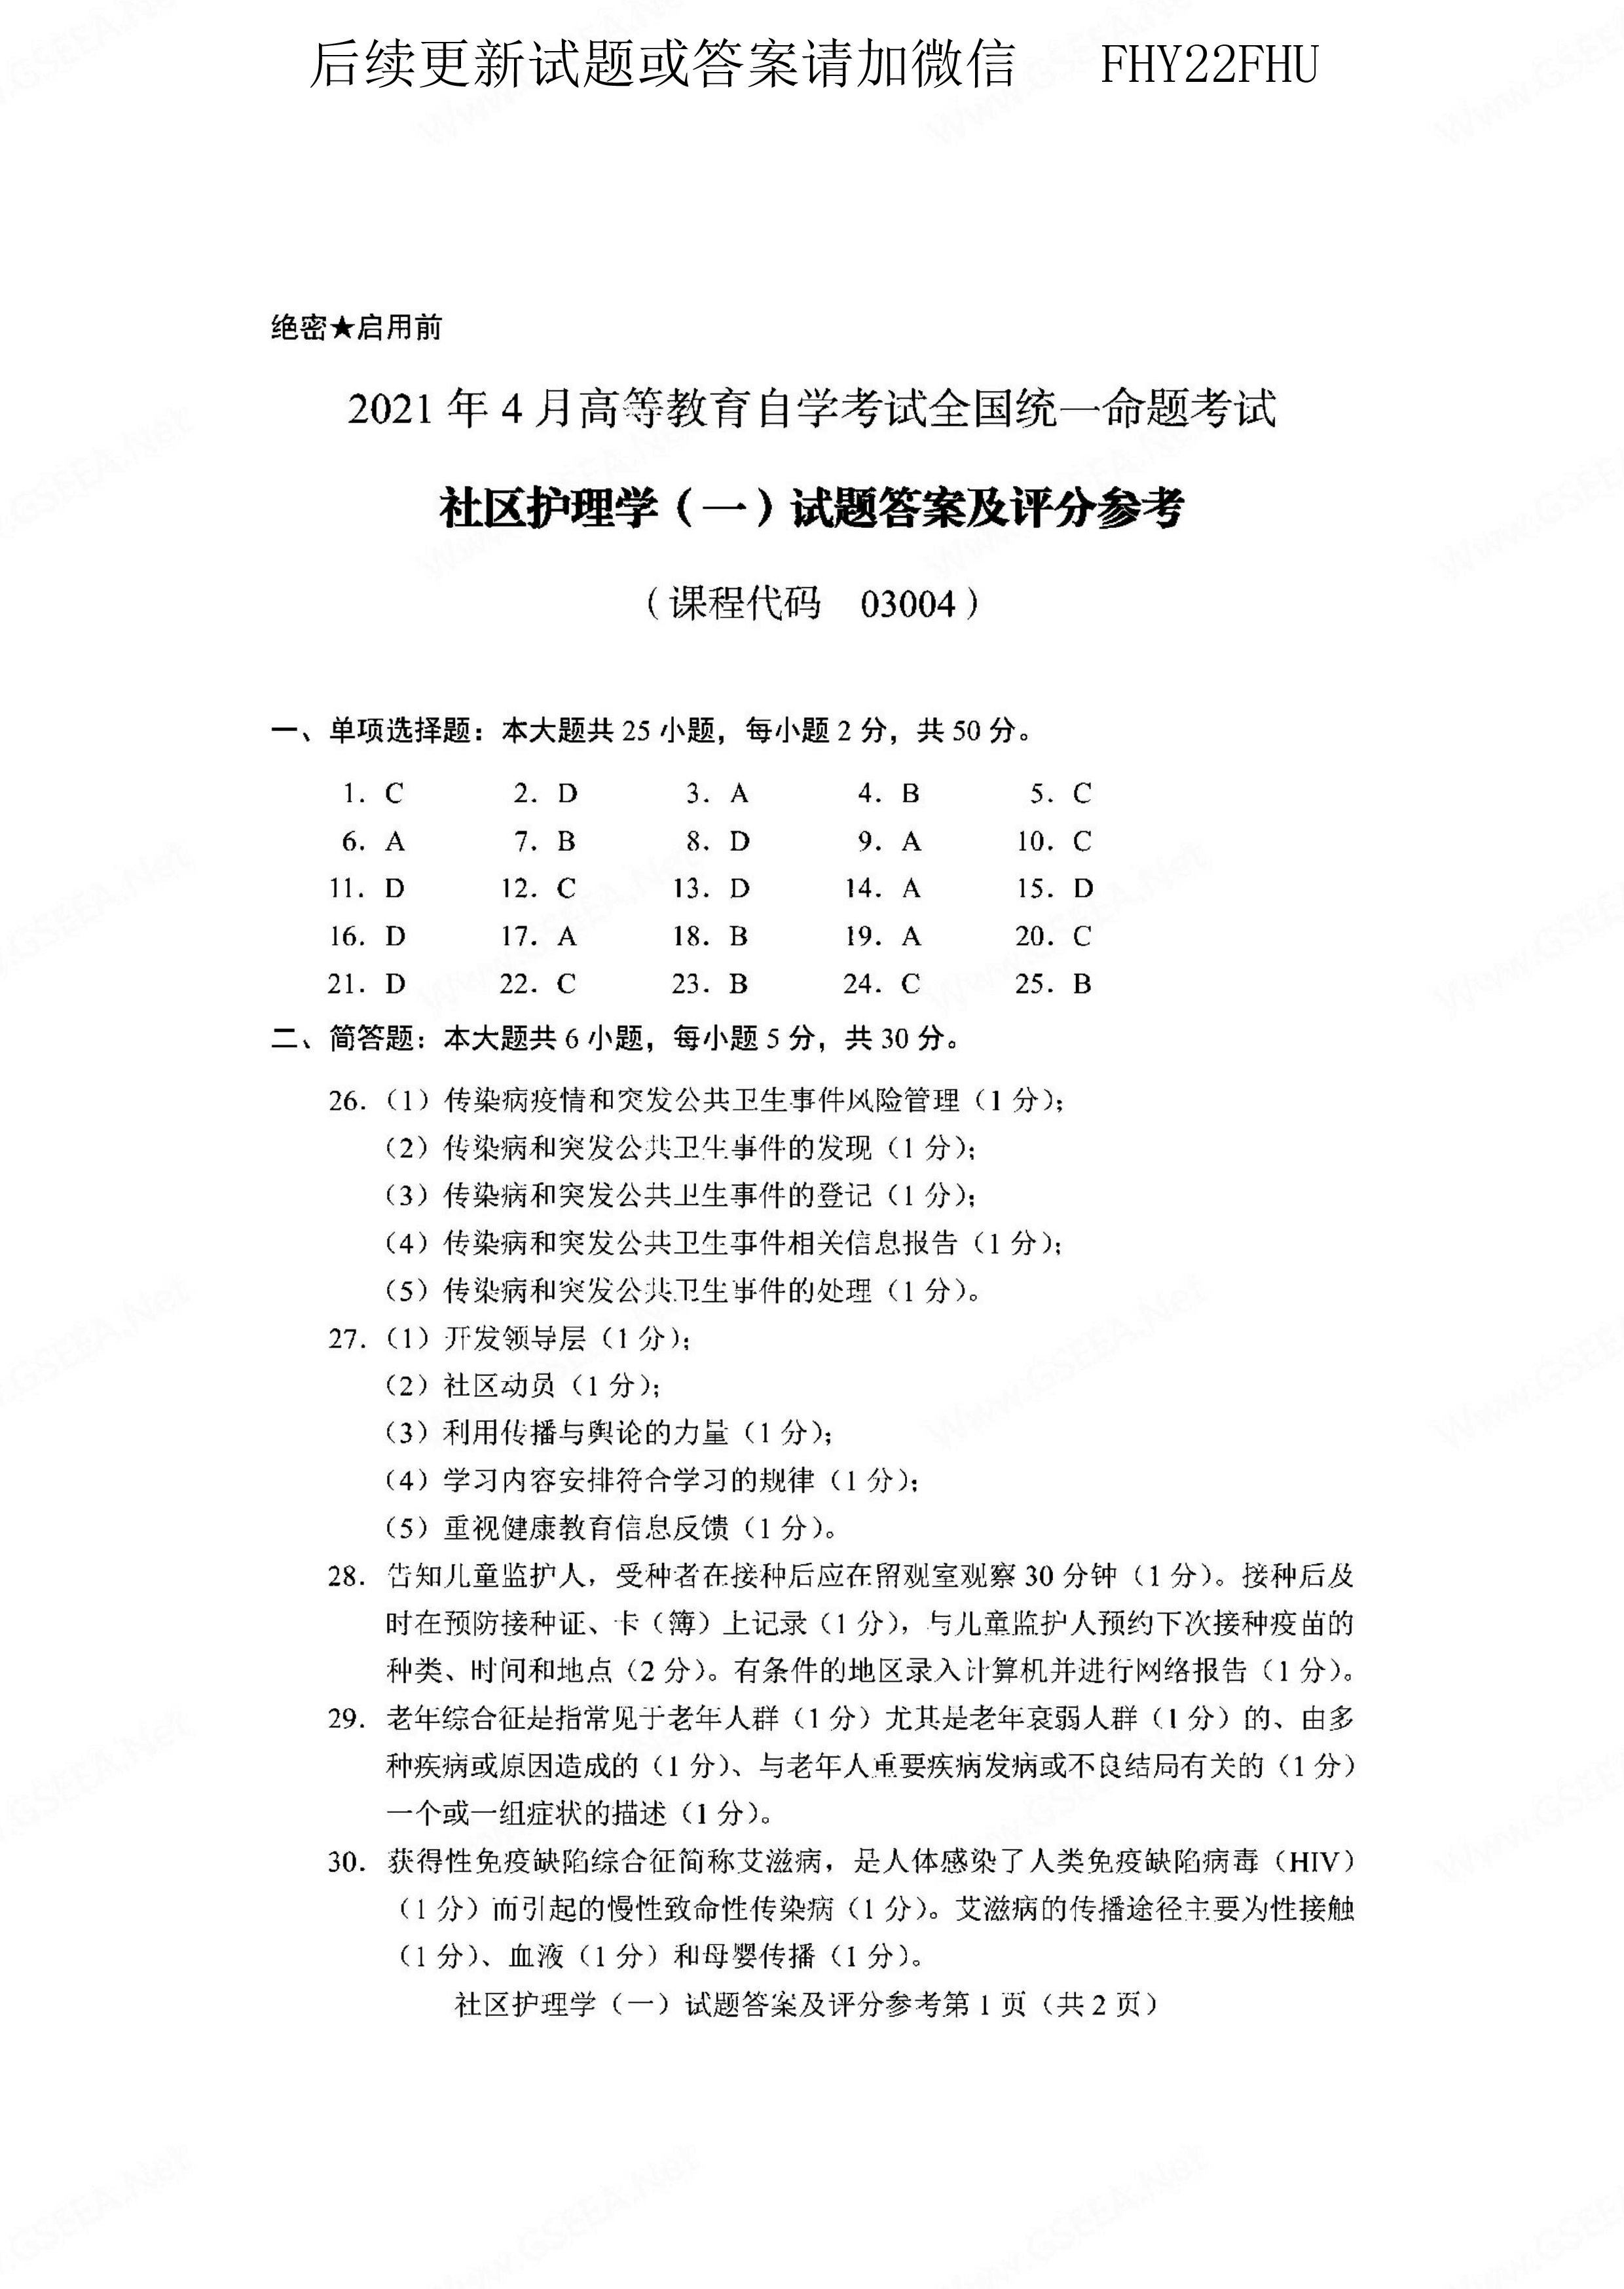 贵州省2021年04月自学考试03004社区护理学一试题及答案